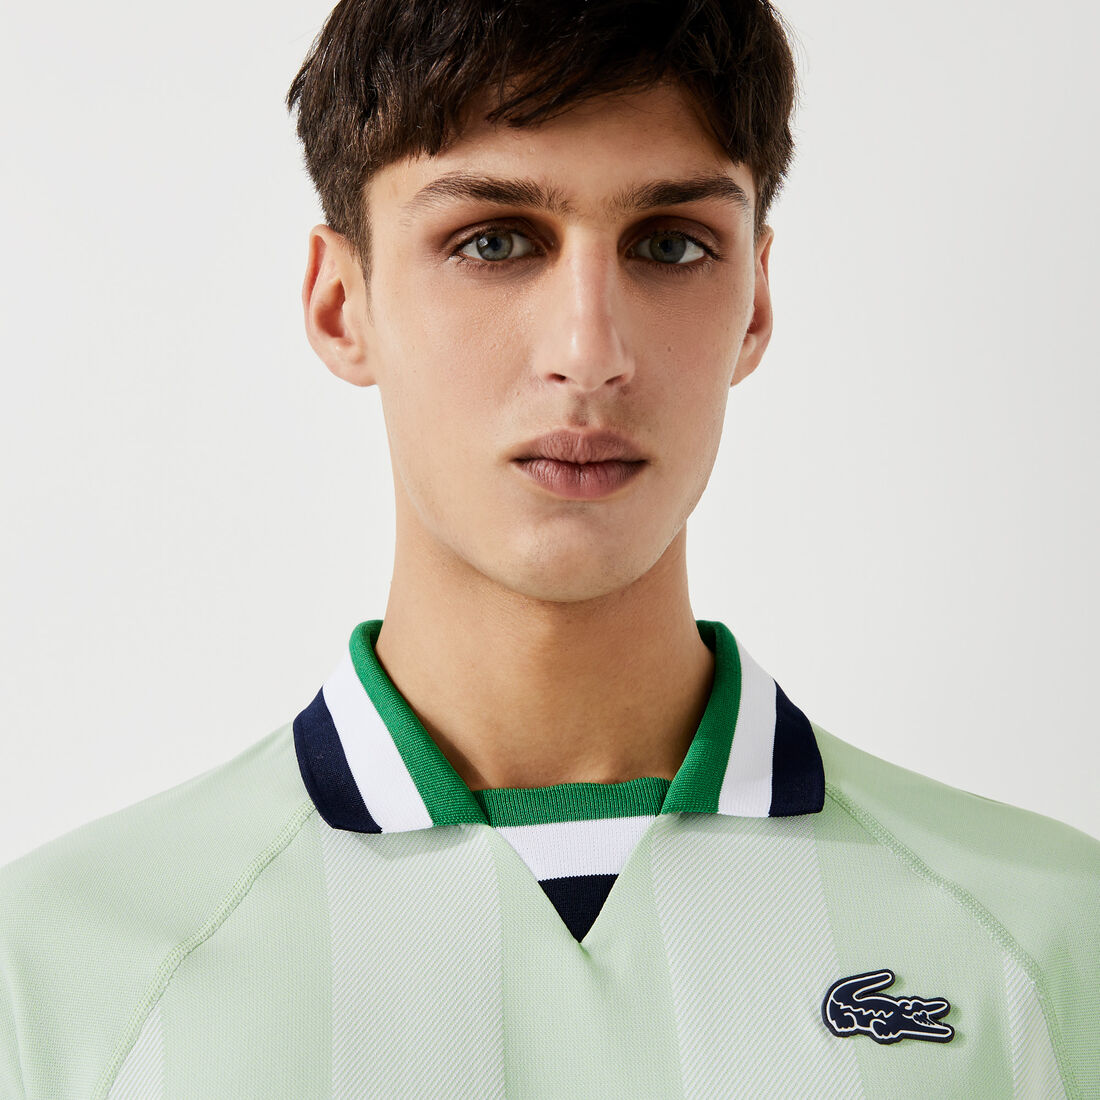 Men's Lacoste SPORT Seamless Open Collar Jacquard Polo Shirt